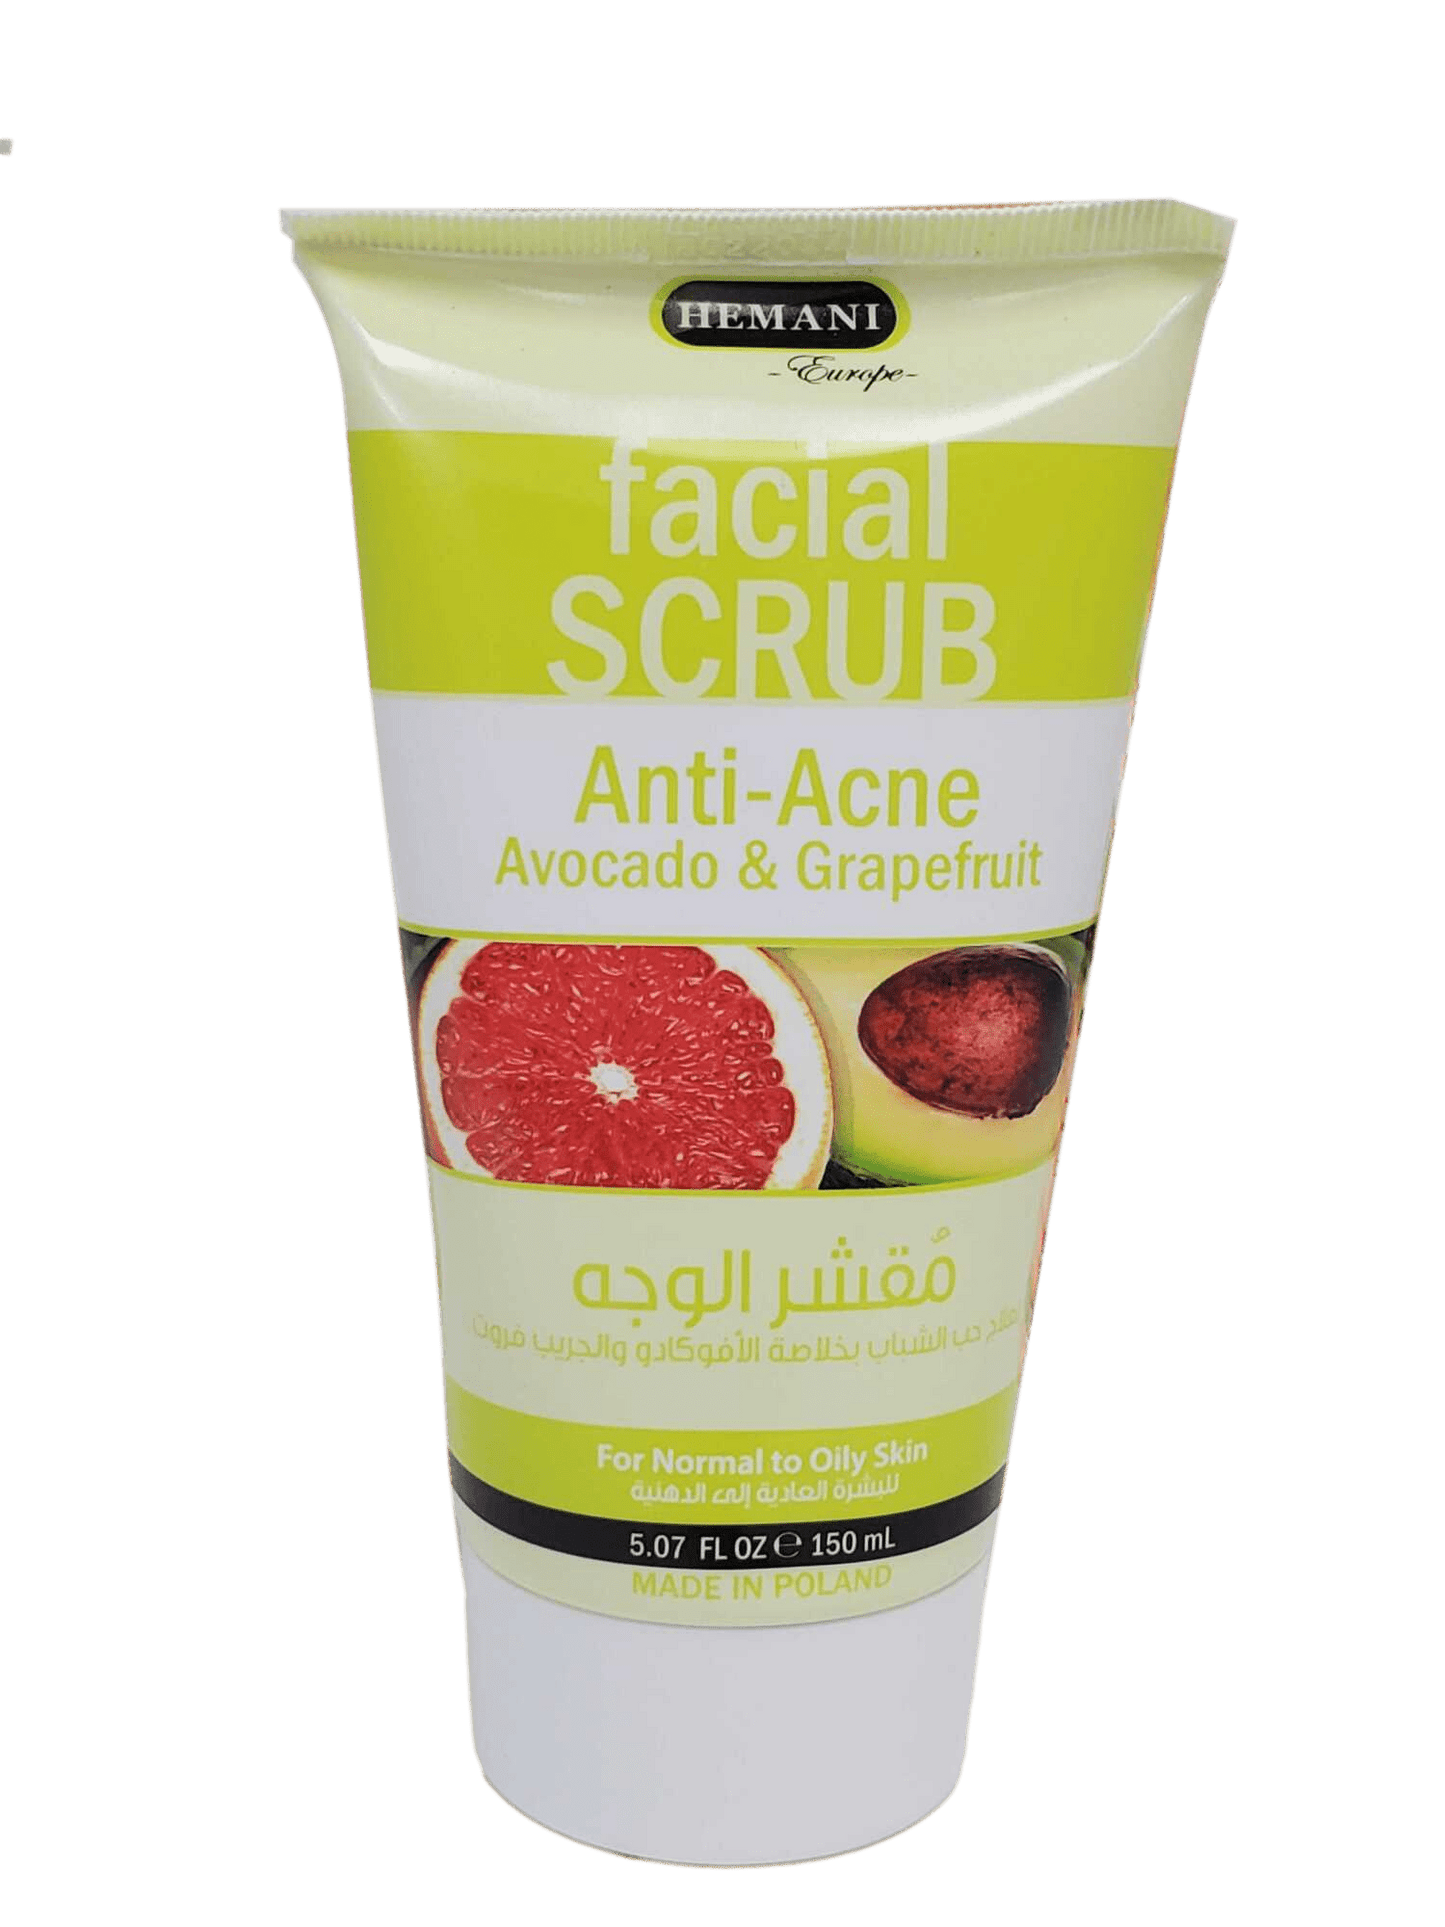 Facial Scrub Anti-Acne  Avocado and Grapefruit